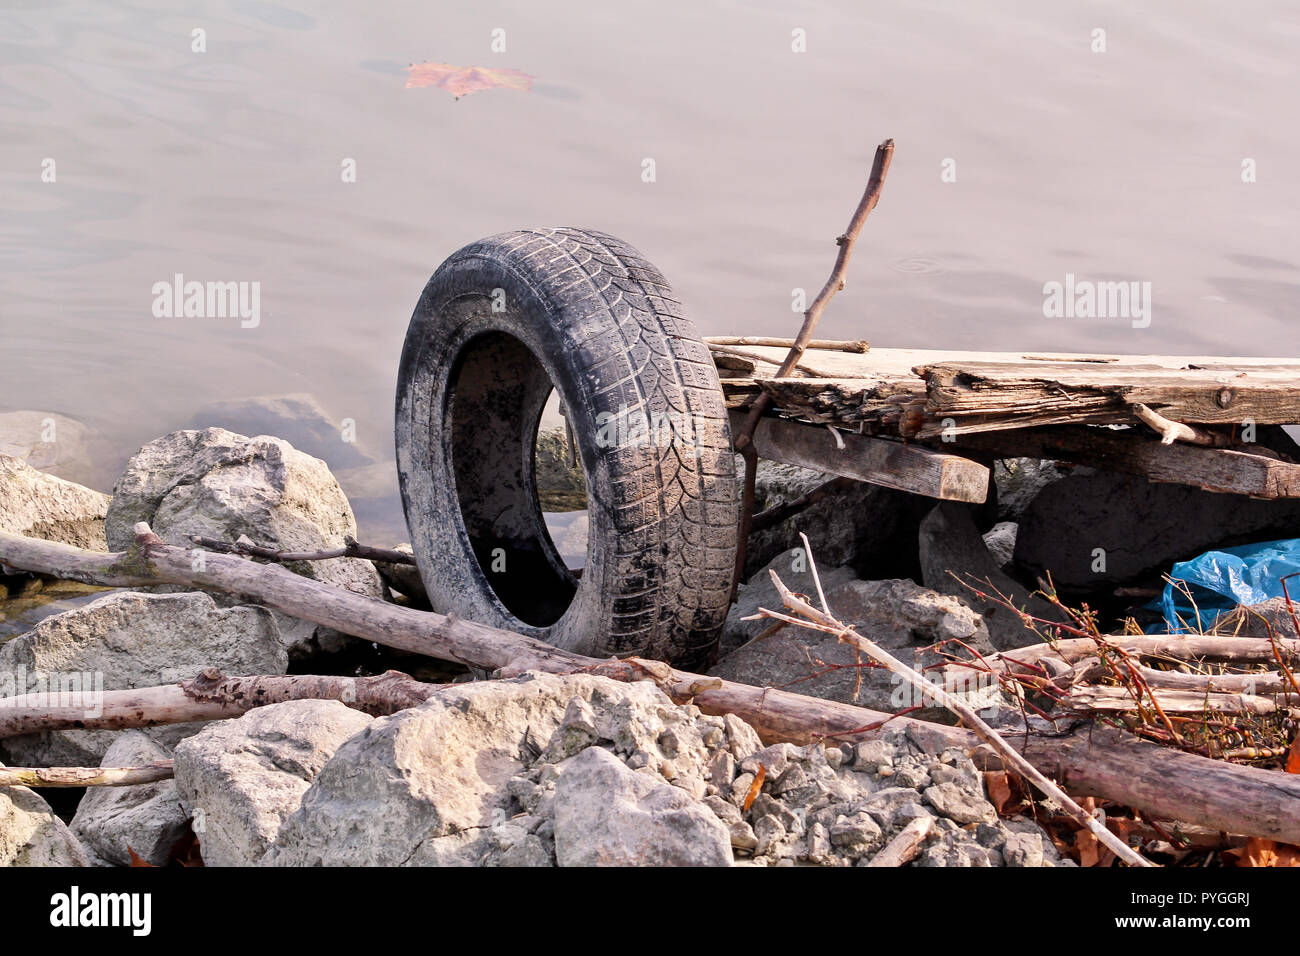 Gebrauchtwagen Reifen links in der Natur. Alte gebrauchte Autoreifen links  durch Kosten für Wasser geworfen. Das Problem der Müll am Strand Fluss  durch den Menschen - Umweltverschmutzung verursacht Stockfotografie - Alamy